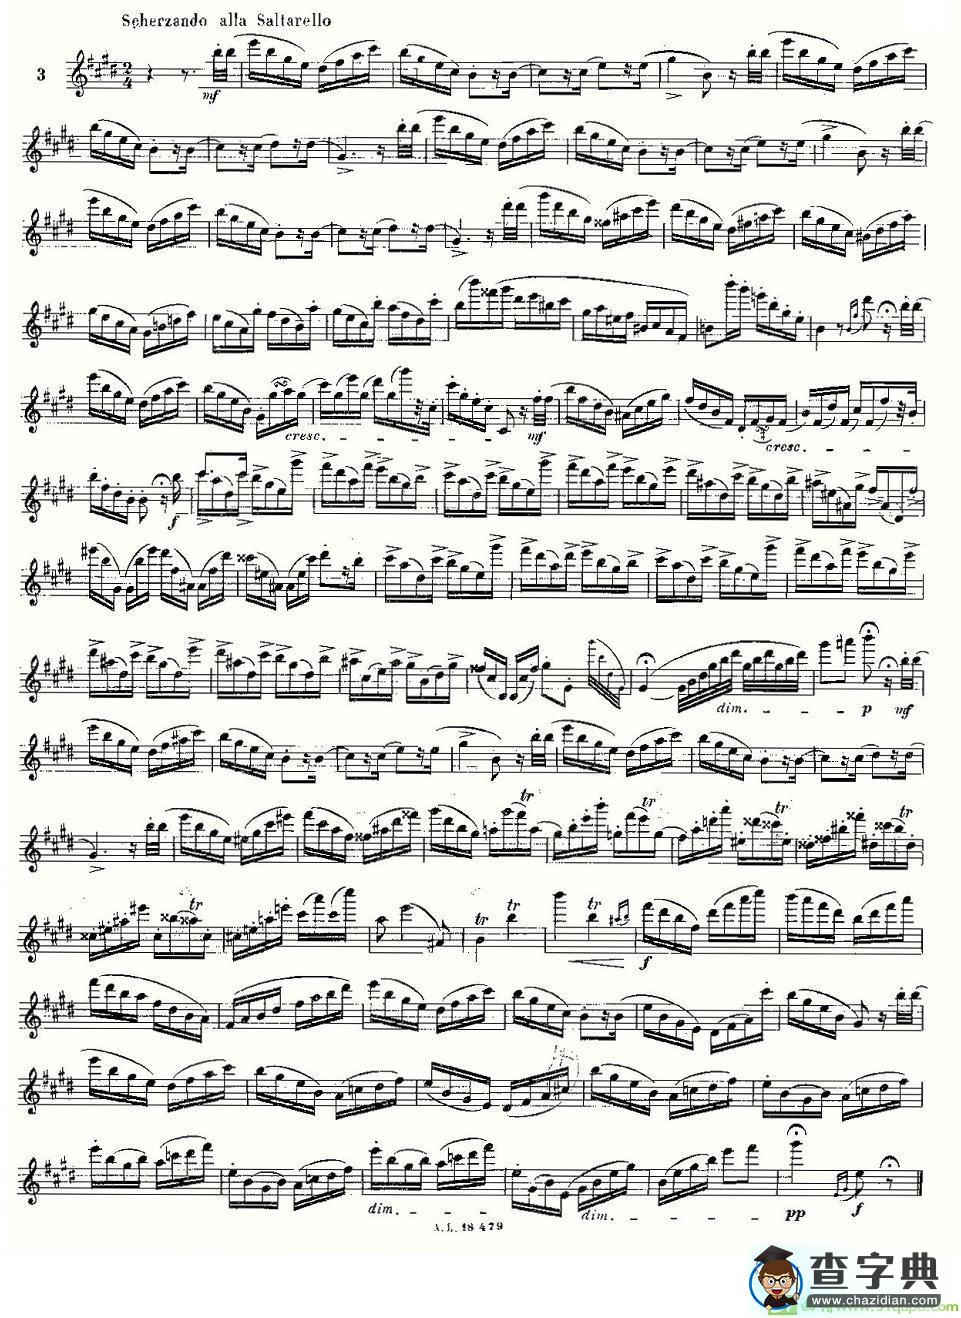 基于维尼亚夫斯基练习曲的10首长笛练习曲之3长笛谱(莫伊斯Moyse作曲)